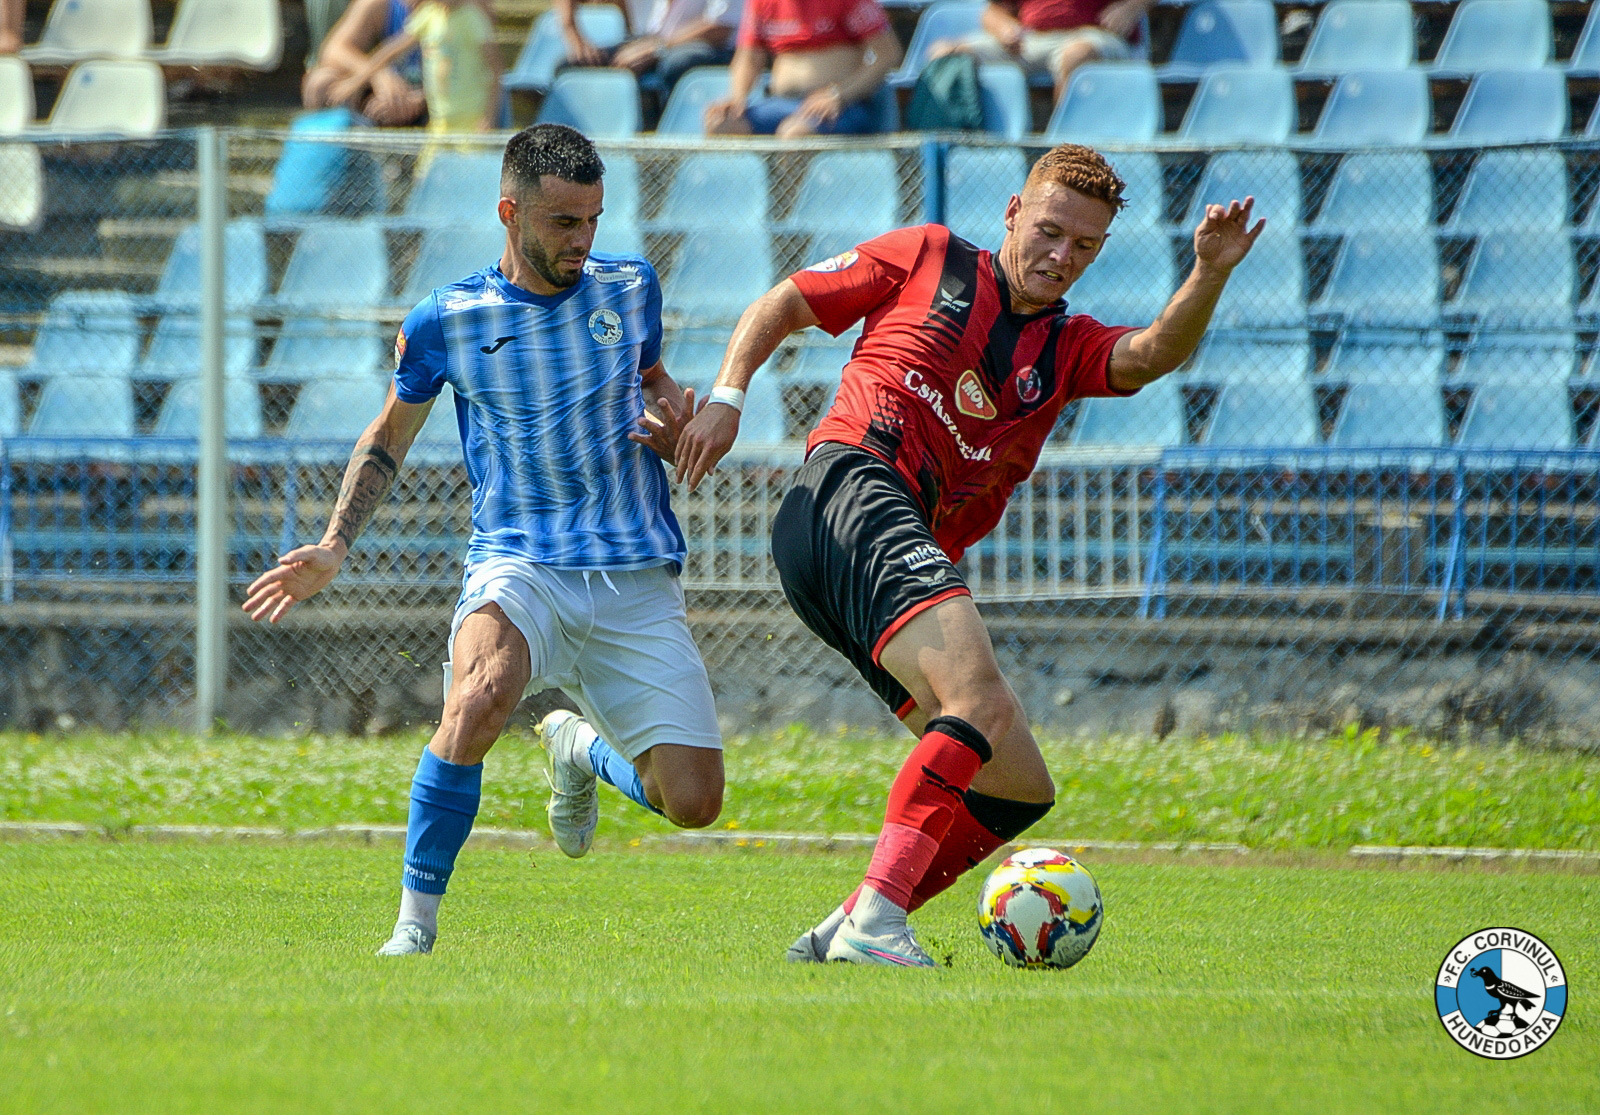 Az FK tanult a vajdahunyadi meccsen elkövetett hibákból | Fotó: Corvinul/Facebook